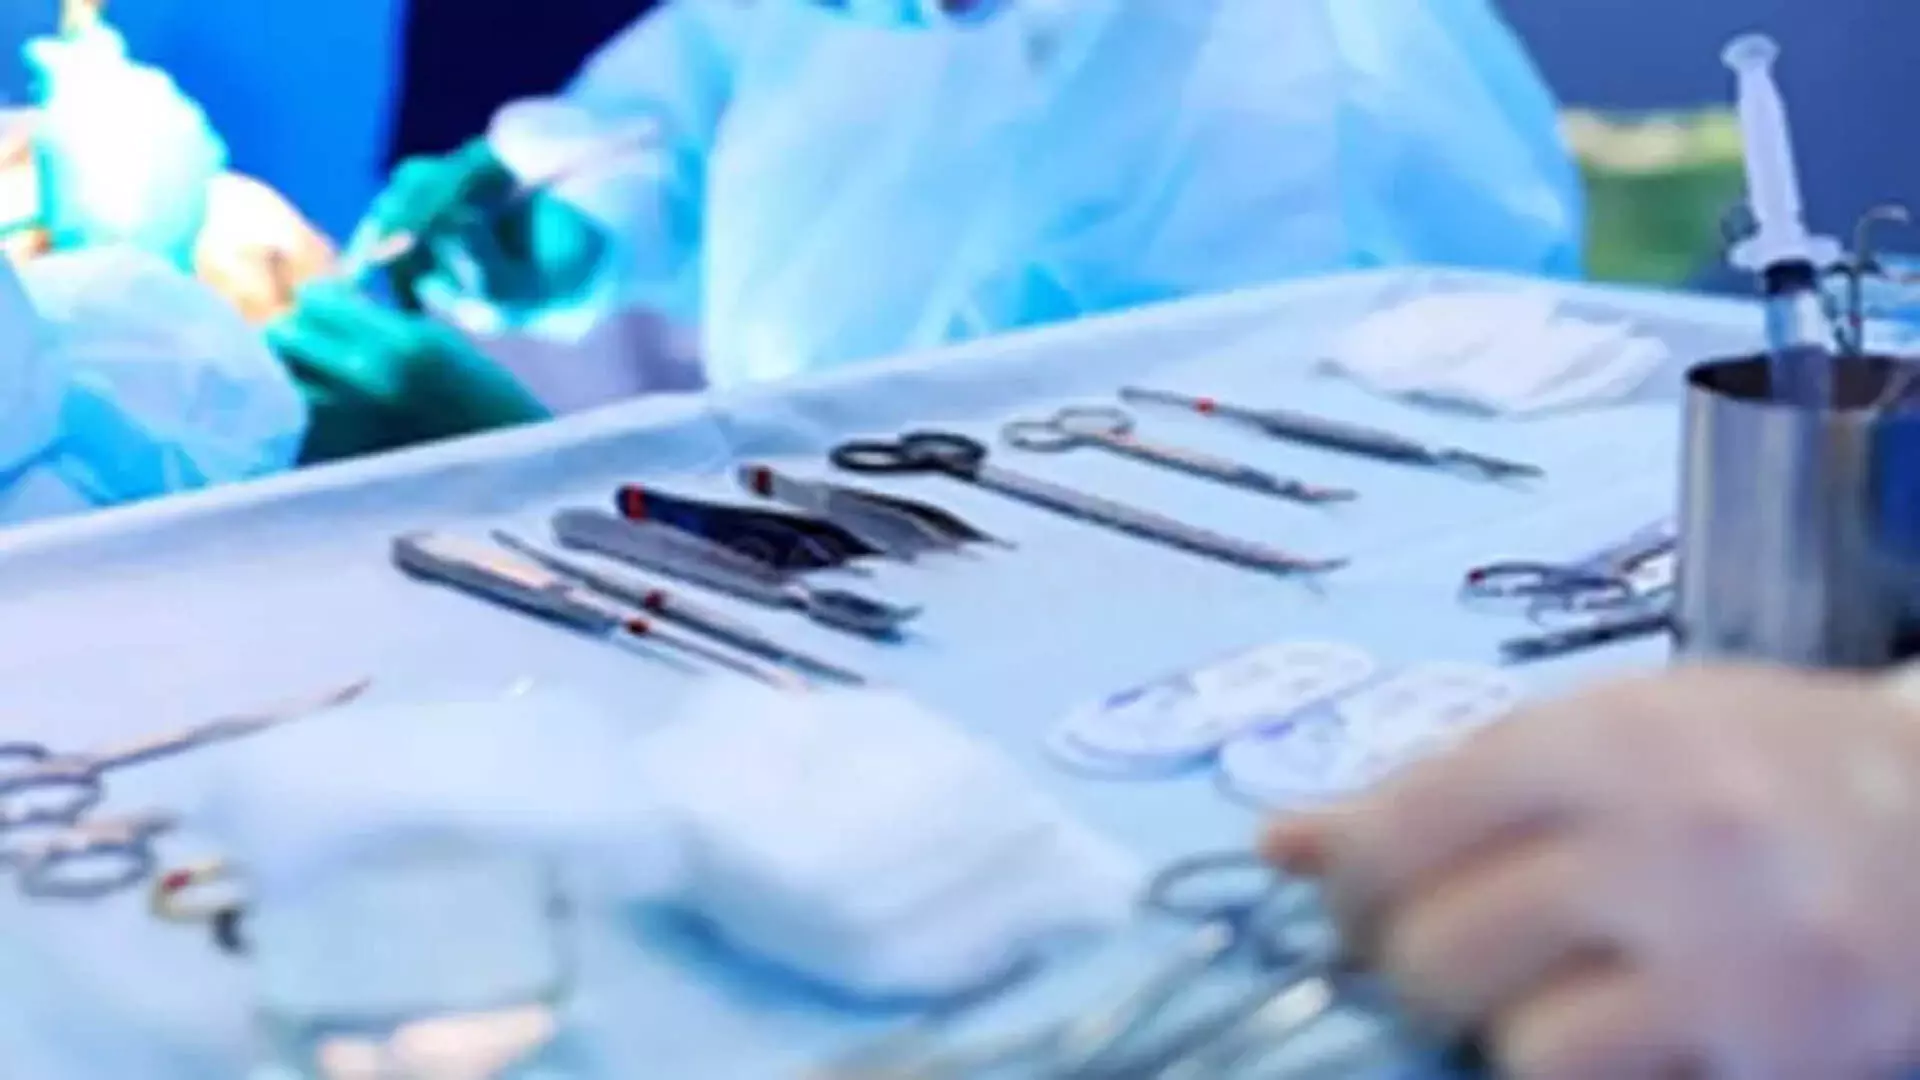 Doctors ने छह घंटे की जटिल सर्जरी में पांच वर्षीय बच्चे की रीढ़ की विकृति का इलाज किया